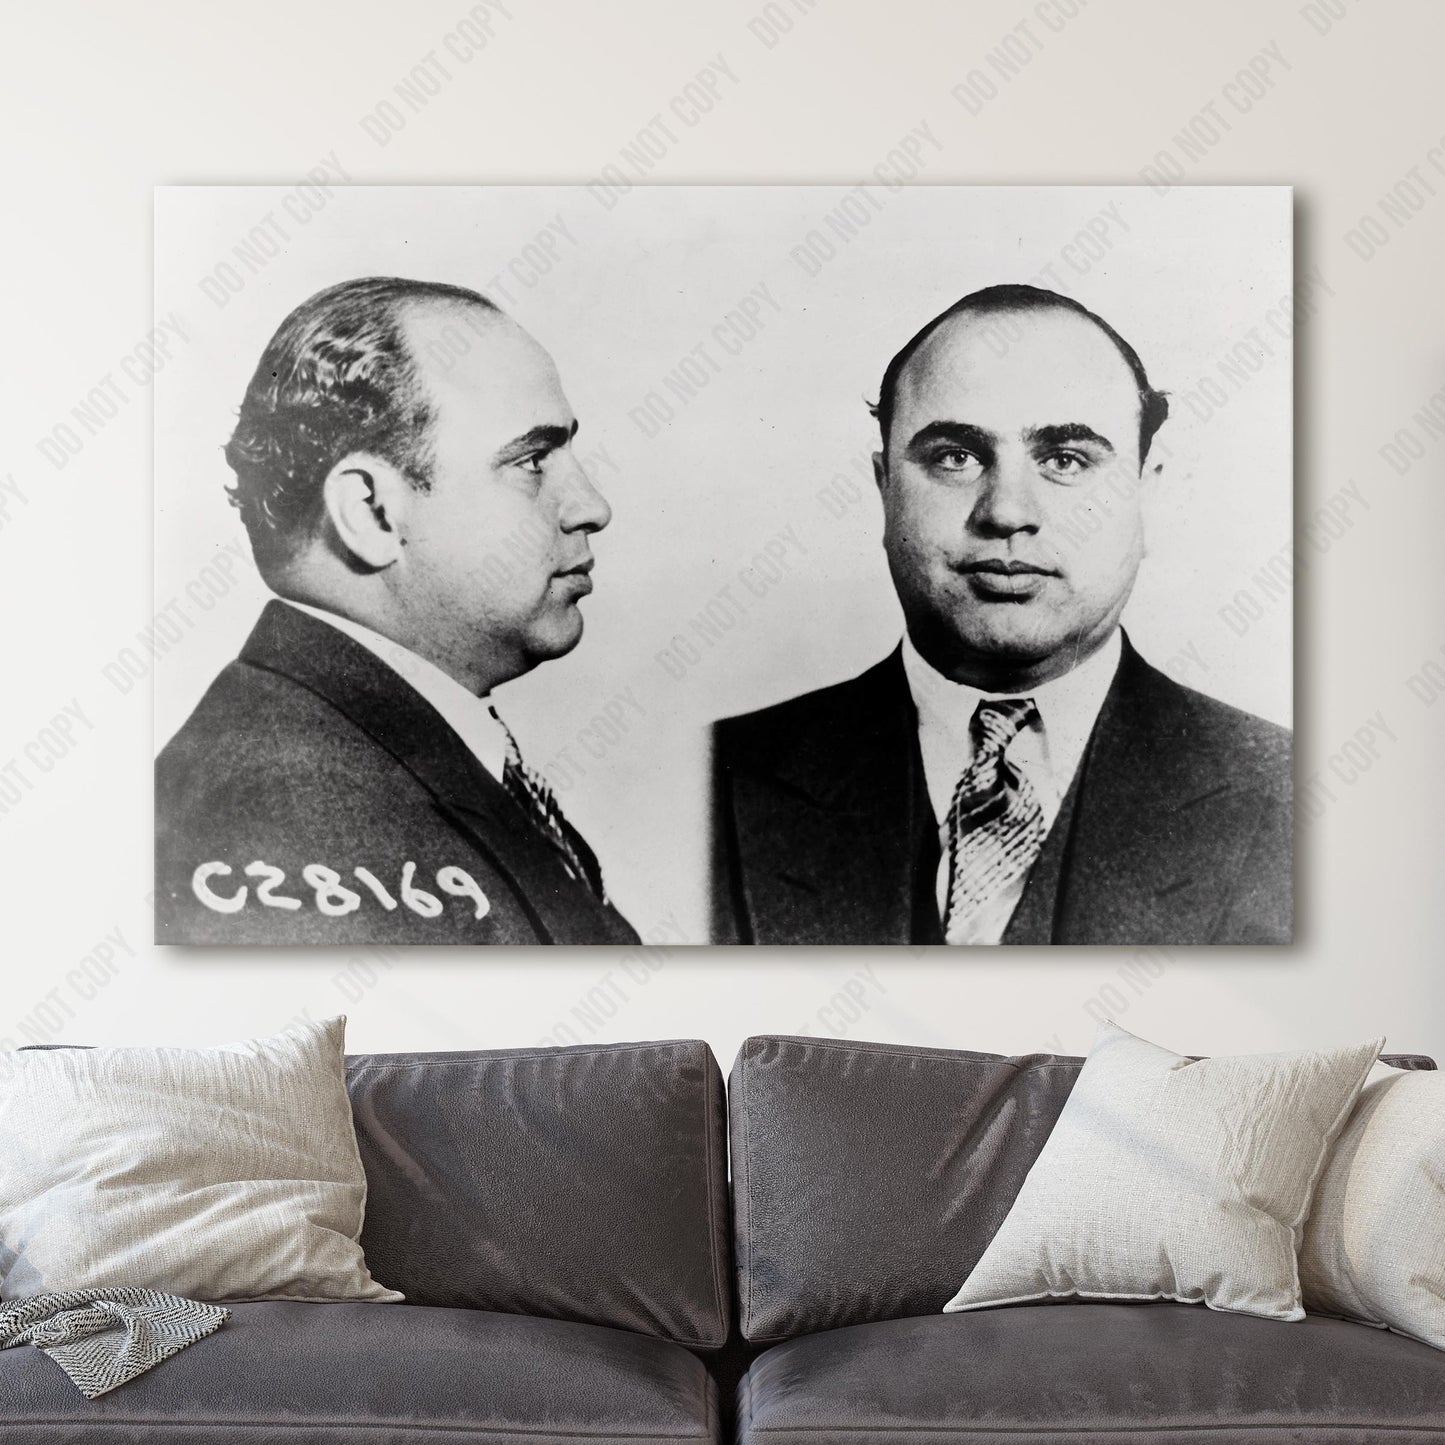 Al Capone 1930s Chicago Prison Mug Shots